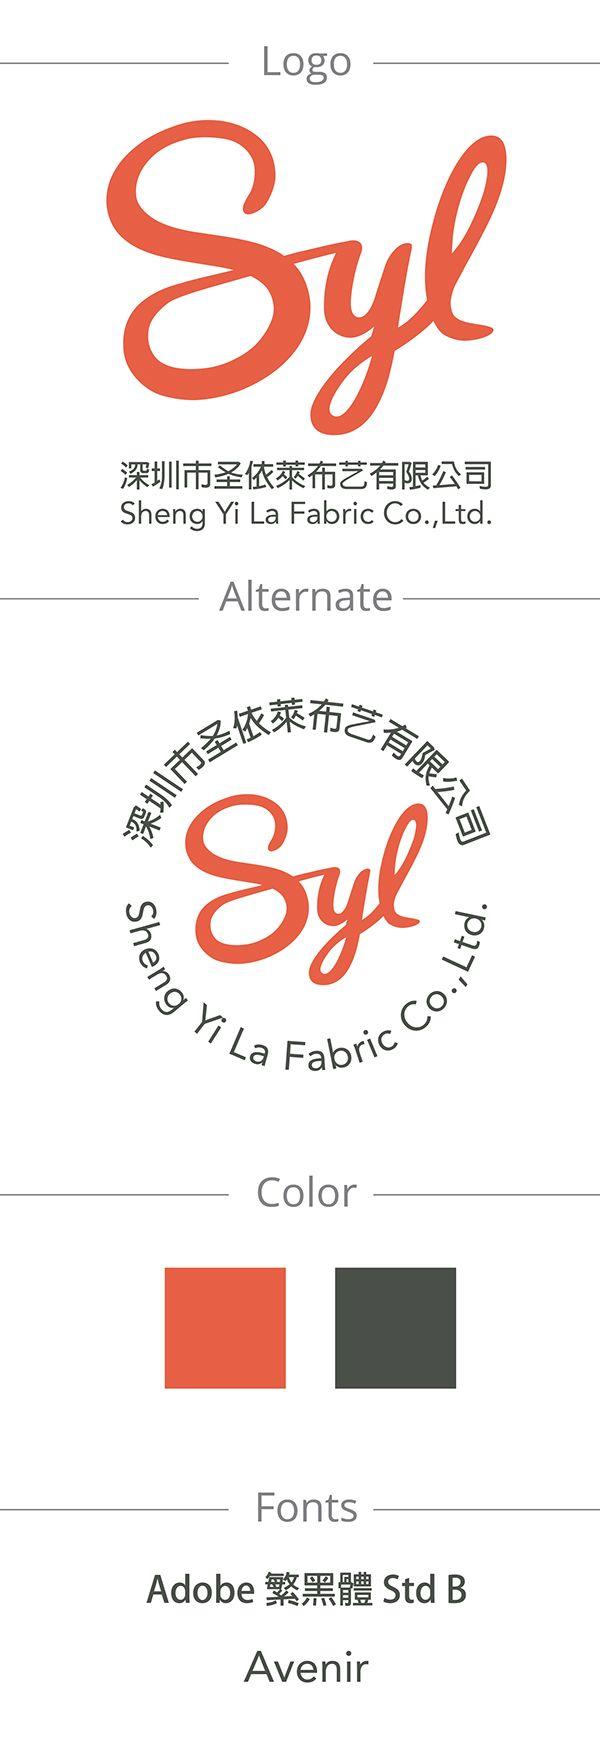 Syl Logo - SYL logo | Portfolio | Brand identity, Company logo, Logos